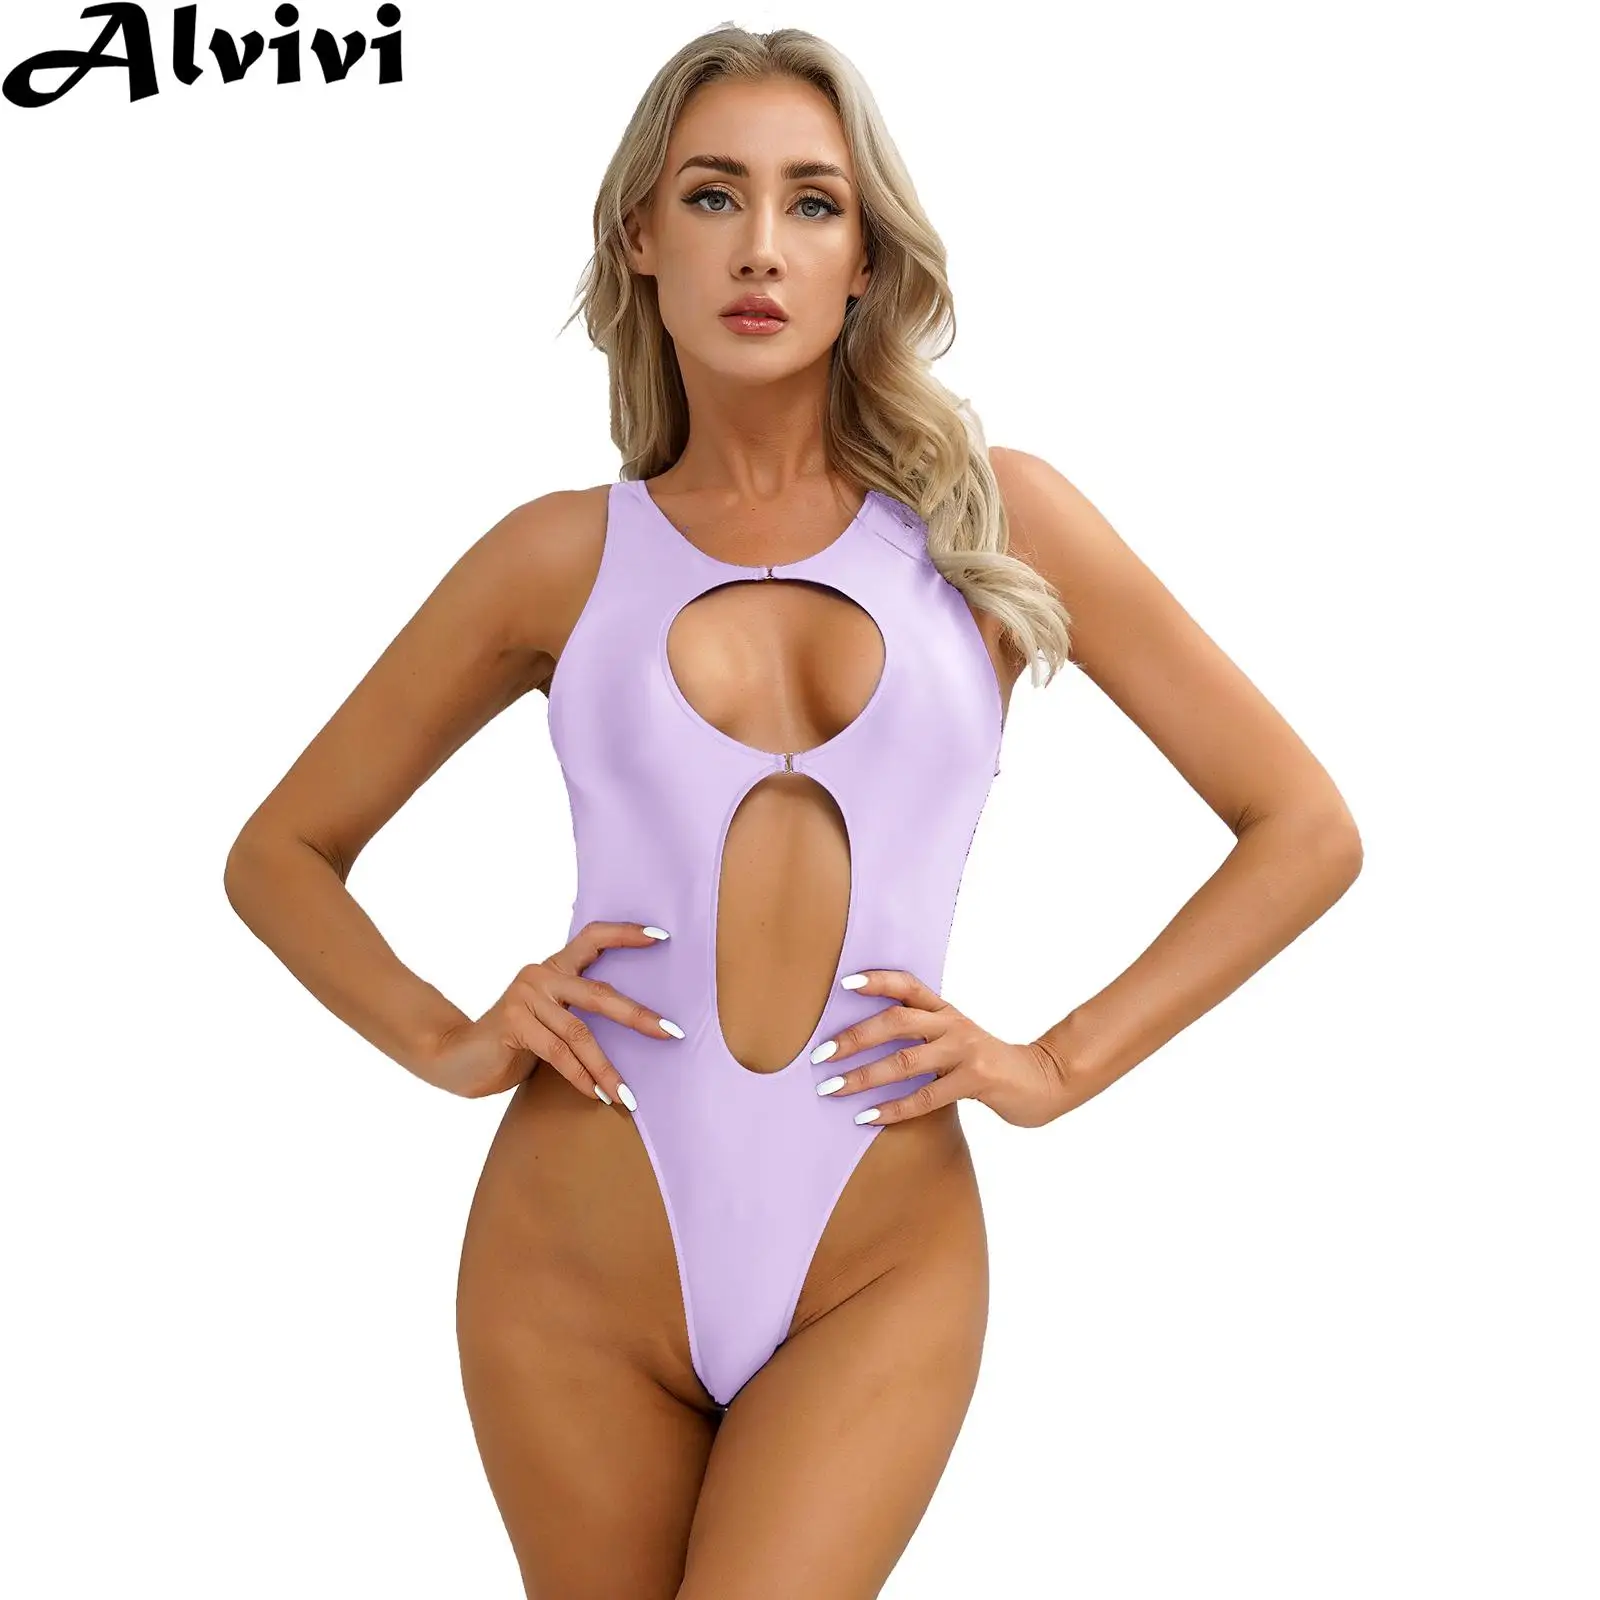 

Womens Cutout Glossy Bodysuit Swimwear Monokini Swimsuit Sleeveless High Cut Leotard Bathing Suit Beachwear Clubwear Nightwear